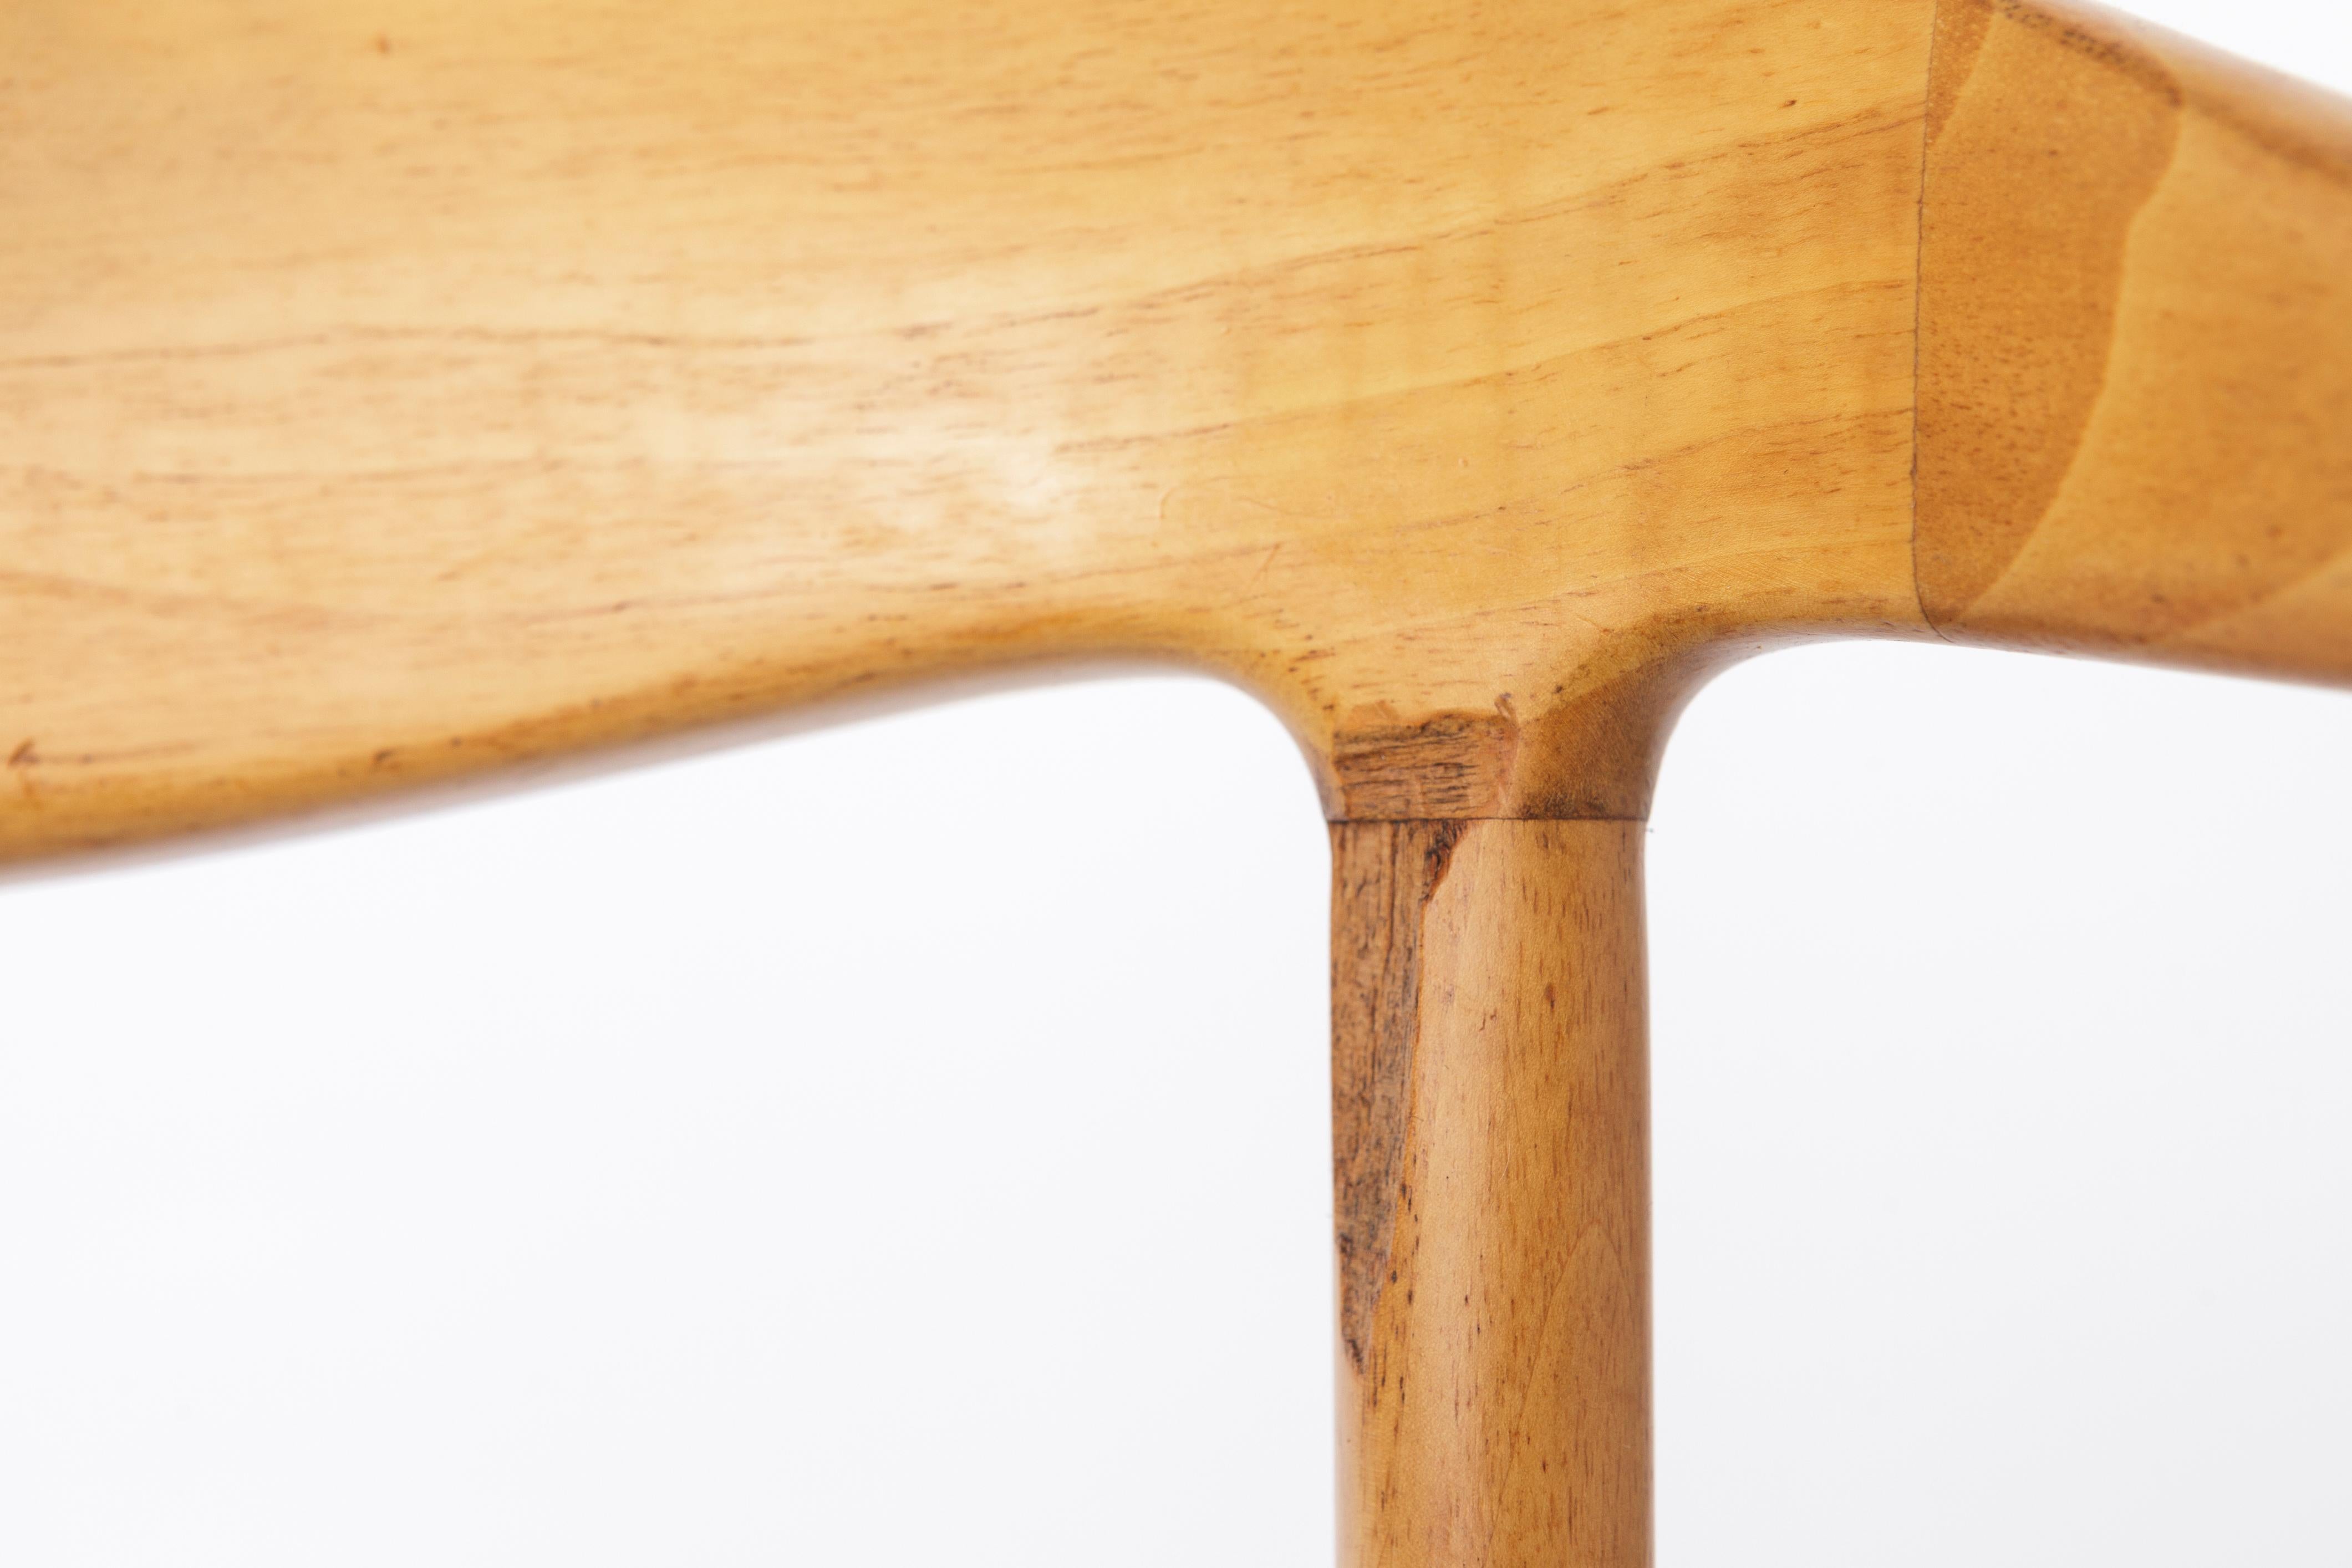 Vintage Amchairs aus der Mitte des Jahrhunderts. Unbekannter Hersteller. 
Die Holzart ist wahrscheinlich Nussbaum. 
Hervorragend geeignet als Esszimmerstuhl oder Schreibtischstuhl

Guter Vintage-Zustand. Stabiler Holzrahmen. Aufgearbeitet und geölt.